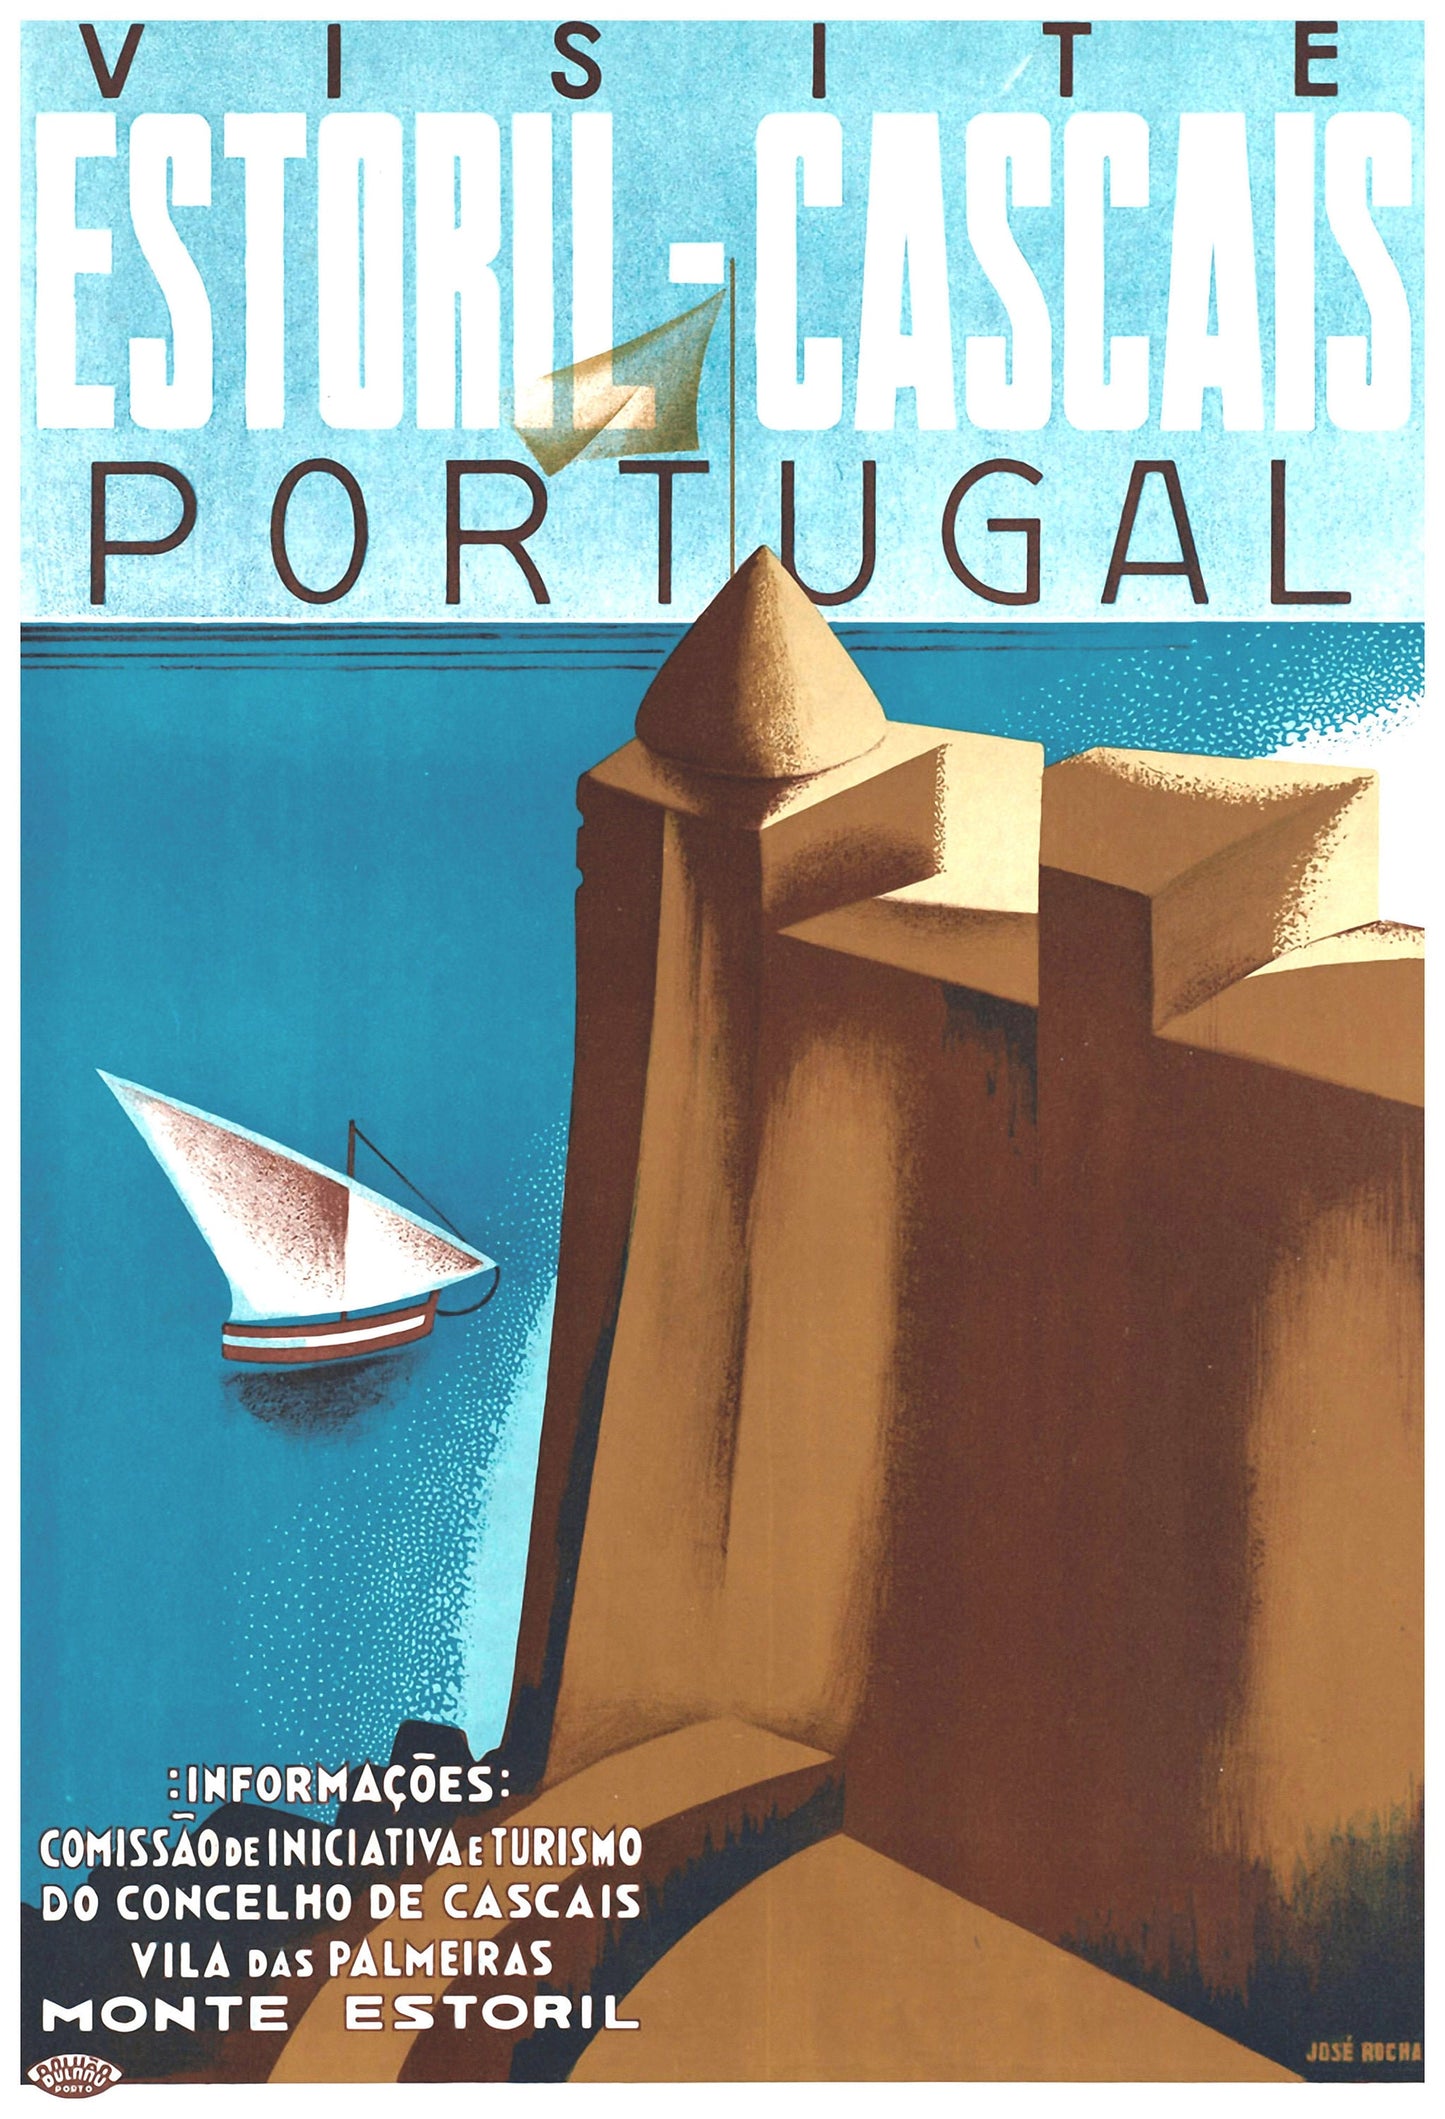 Vintage International Travel Posters Set 2 [56 Images]